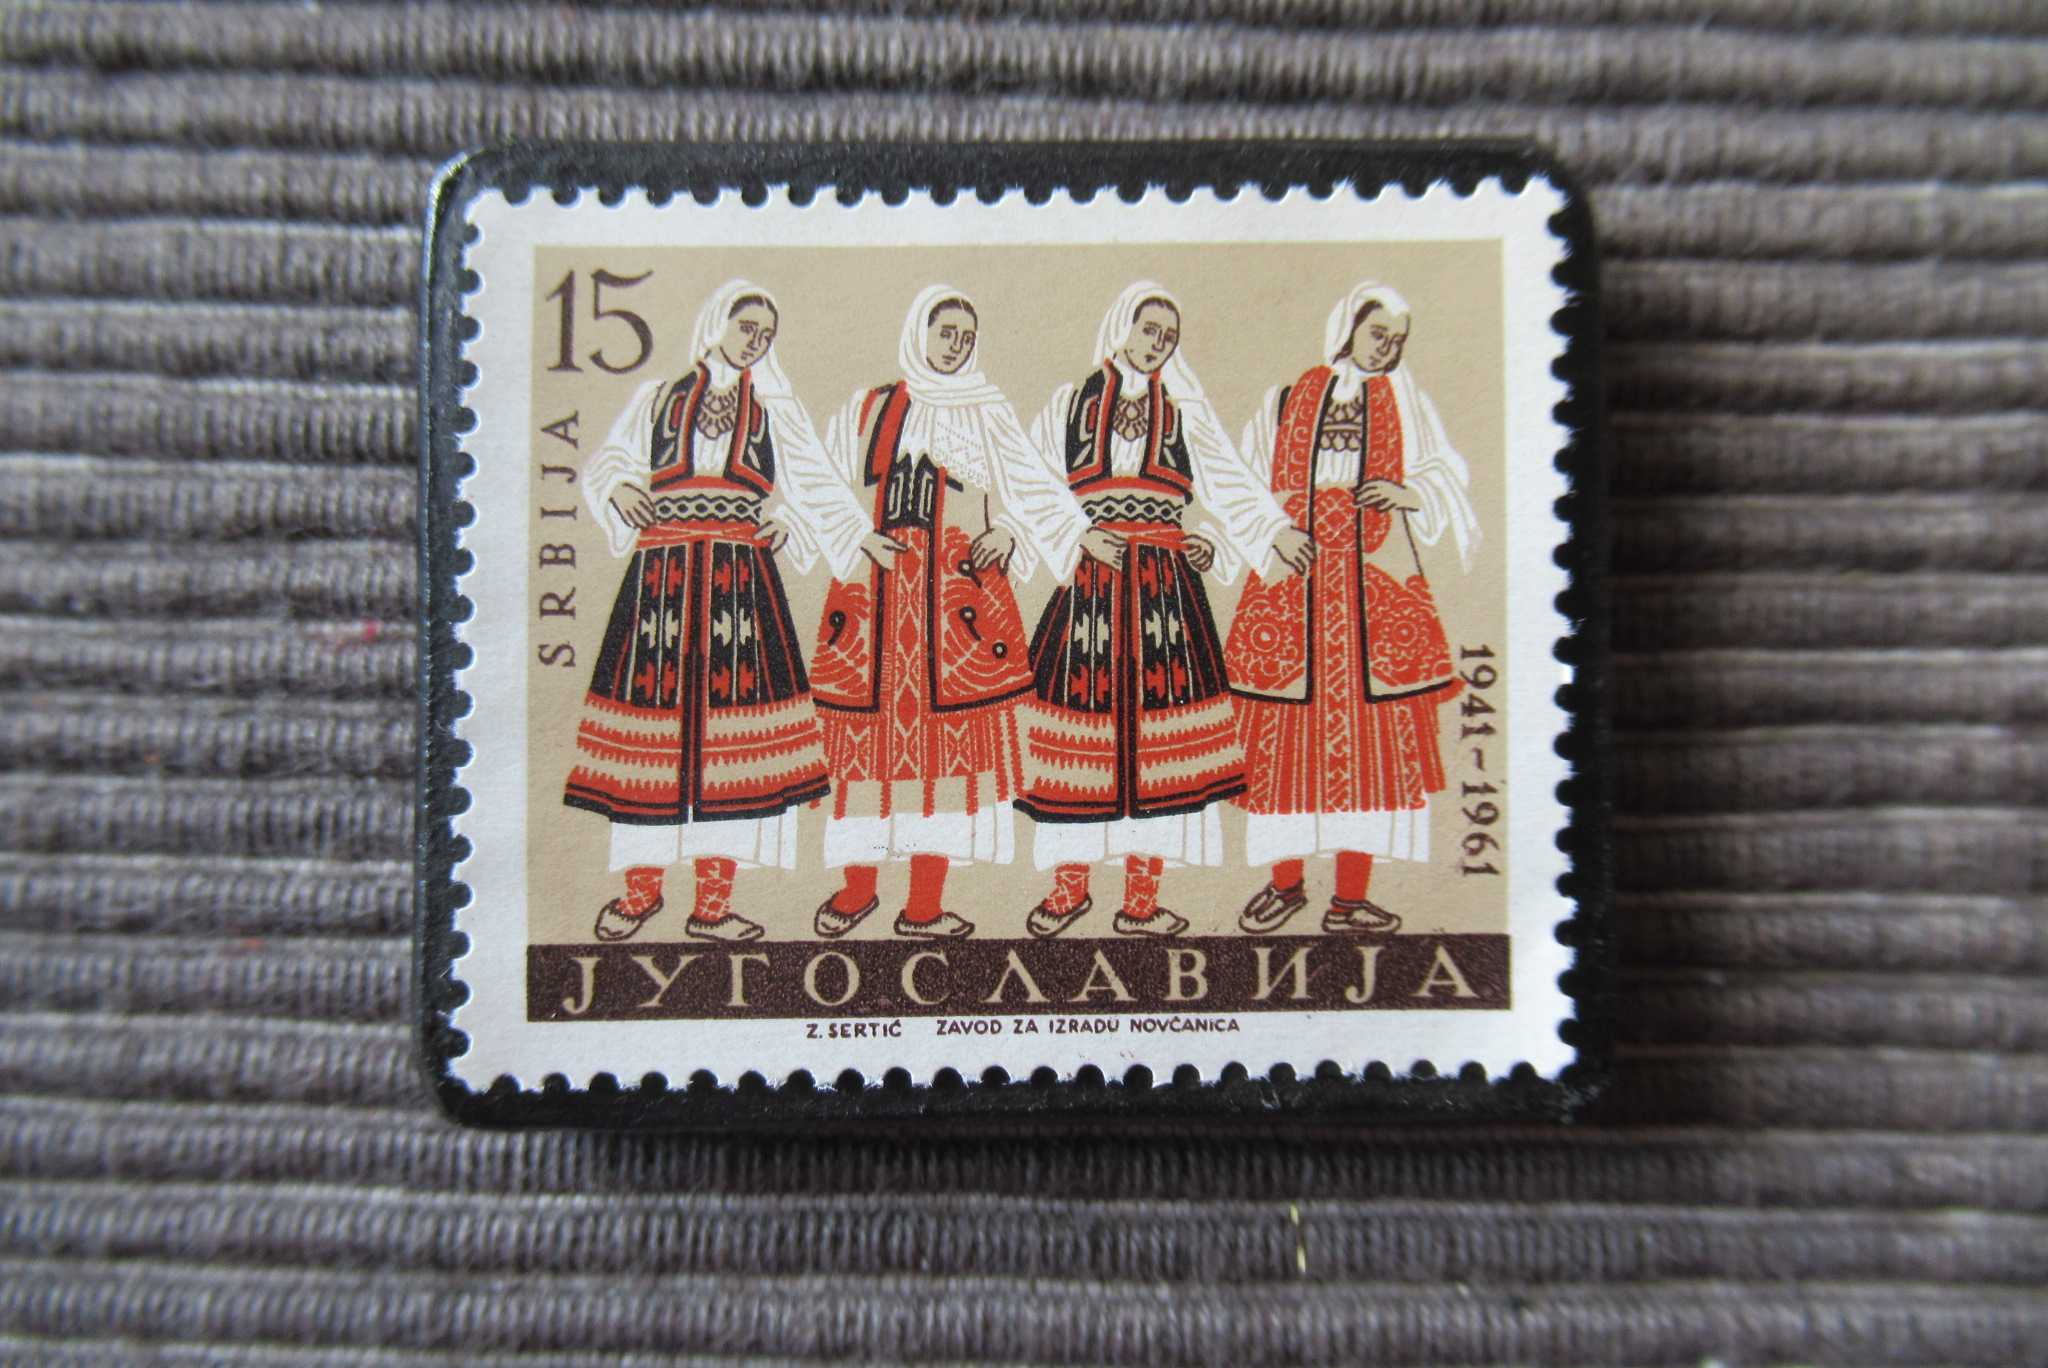 ユーゴスラビア 民族衣装切手ブローチ 7159 Iichi ハンドメイド クラフト作品 手仕事品の通販